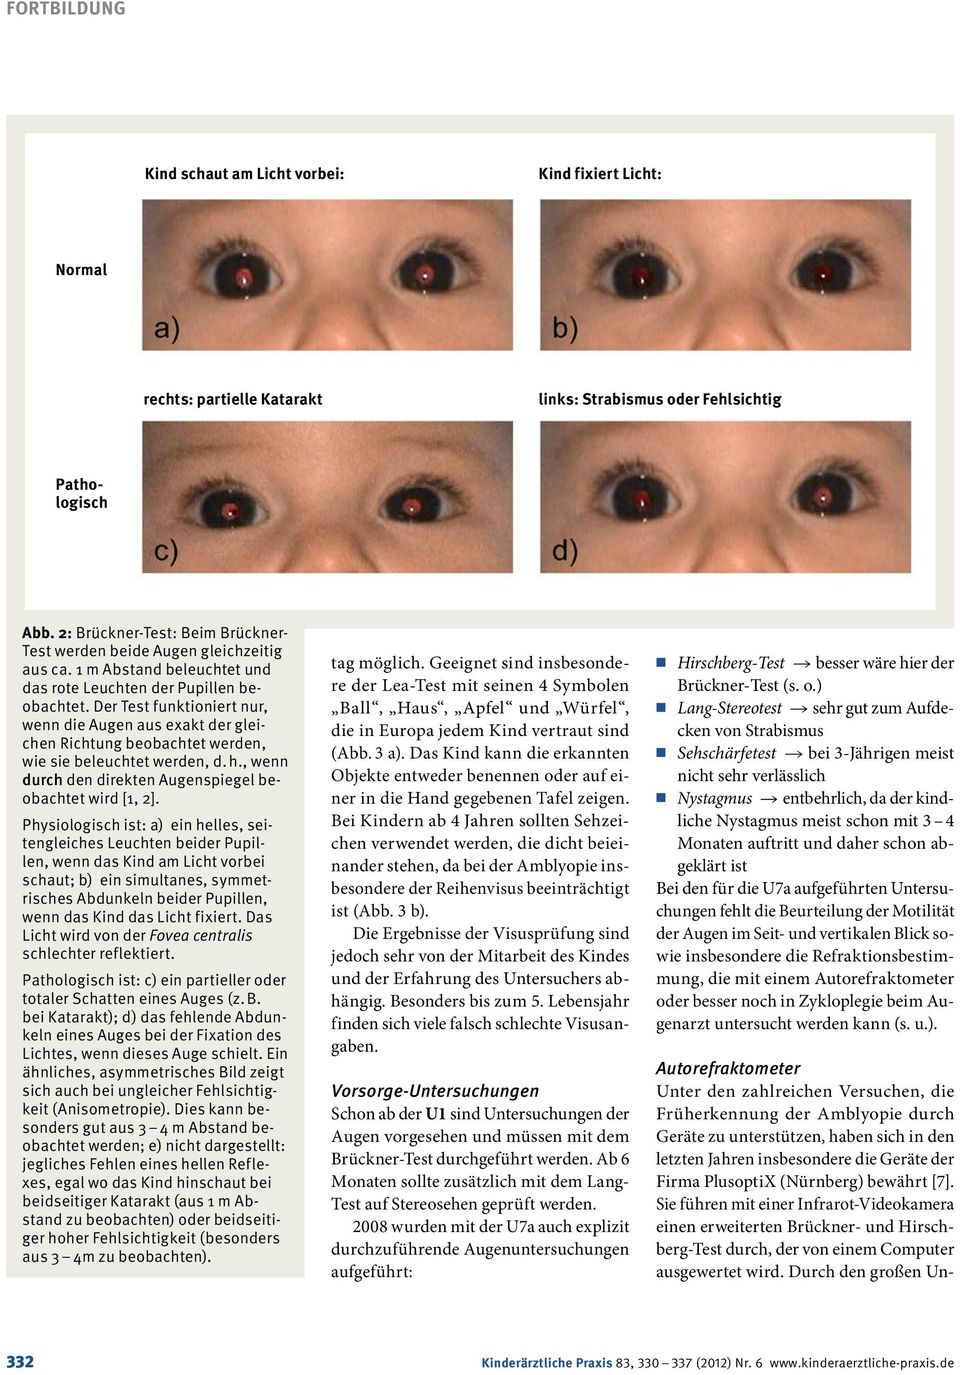 Der Test funktioniert nur, wenn die Augen aus exakt der gleichen Richtung beobachtet werden, wie sie beleuchtet werden, d. h., wenn durch den direkten Augenspiegel beobachtet wird [1, 2].